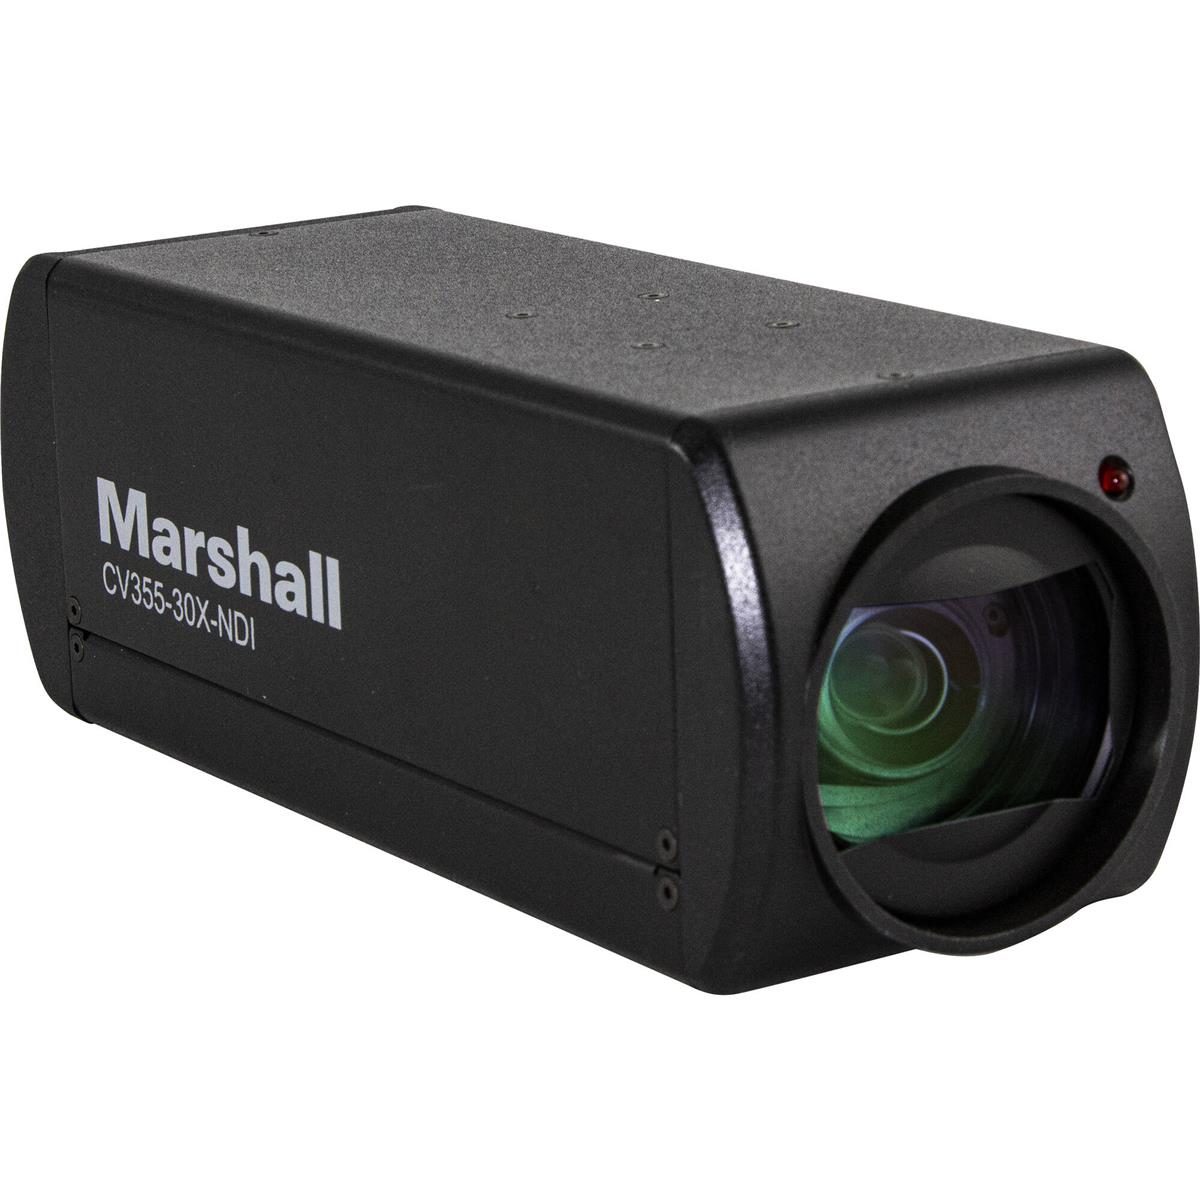 Image of Marshall Electronics CV355-30X-NDI 8.5MP Full HD NDI/3G-SDI/HDMI 30x Box Camera